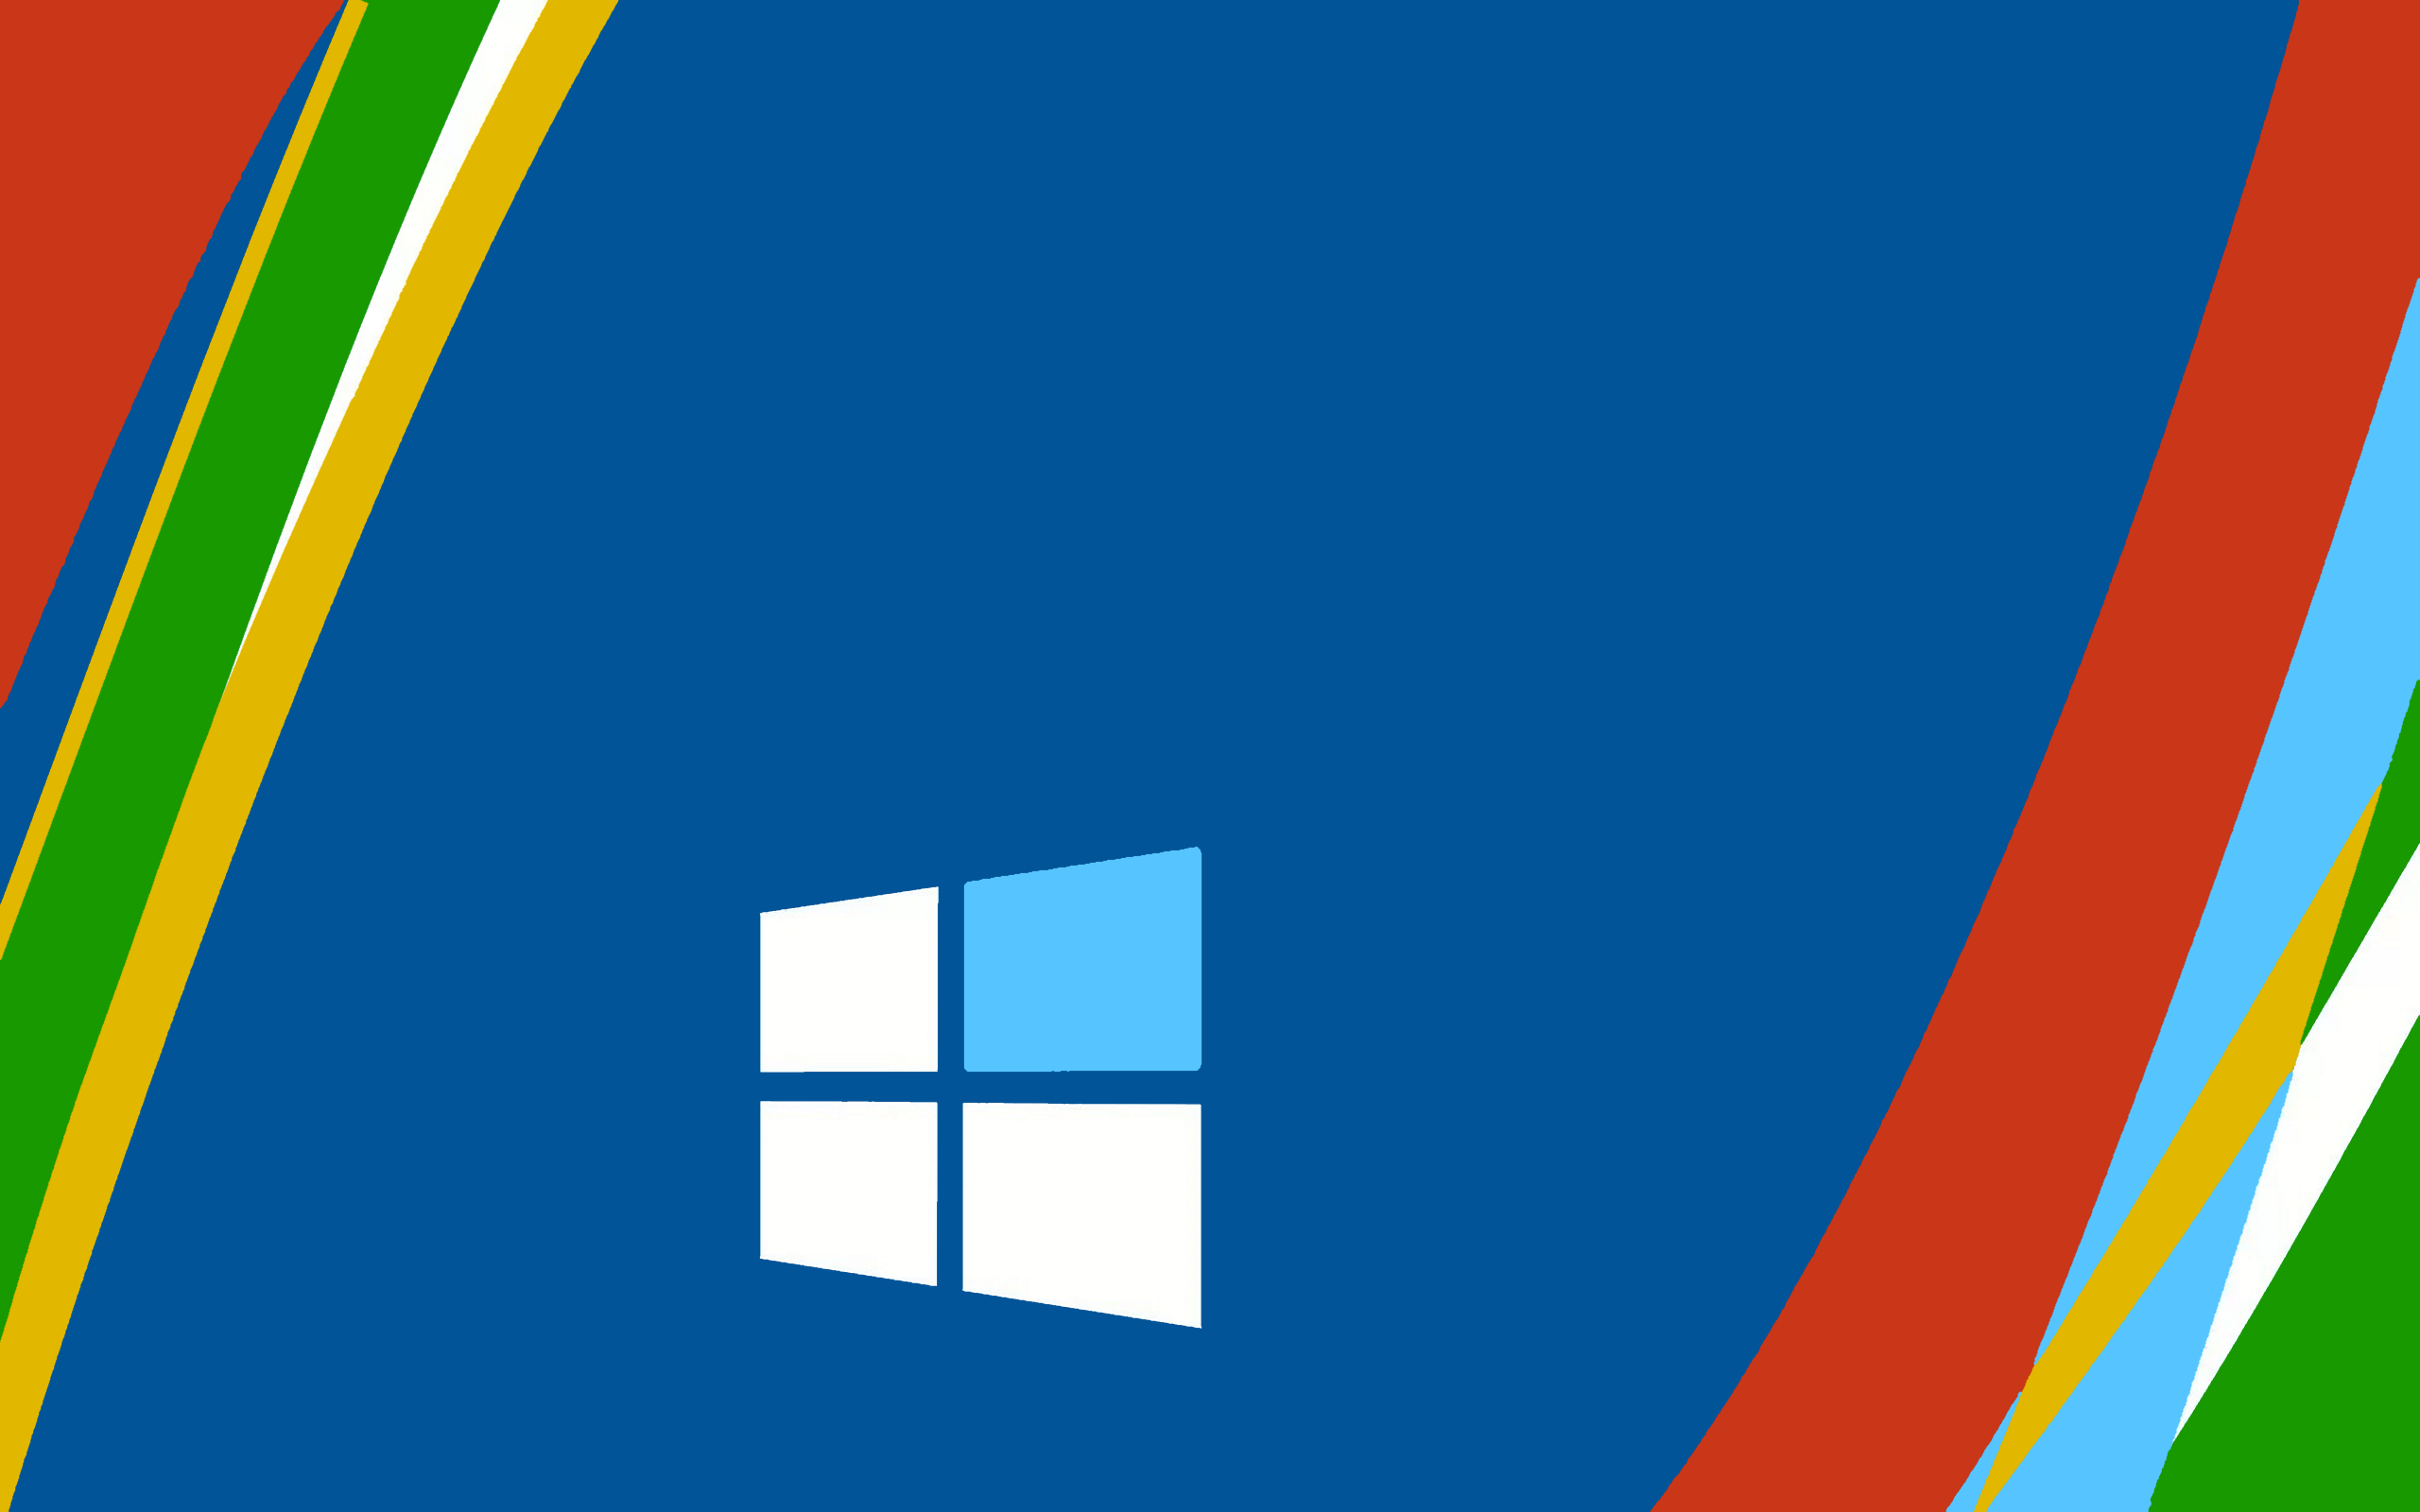 Windows 10 Wallpaper HD - PixelsTalk.Net